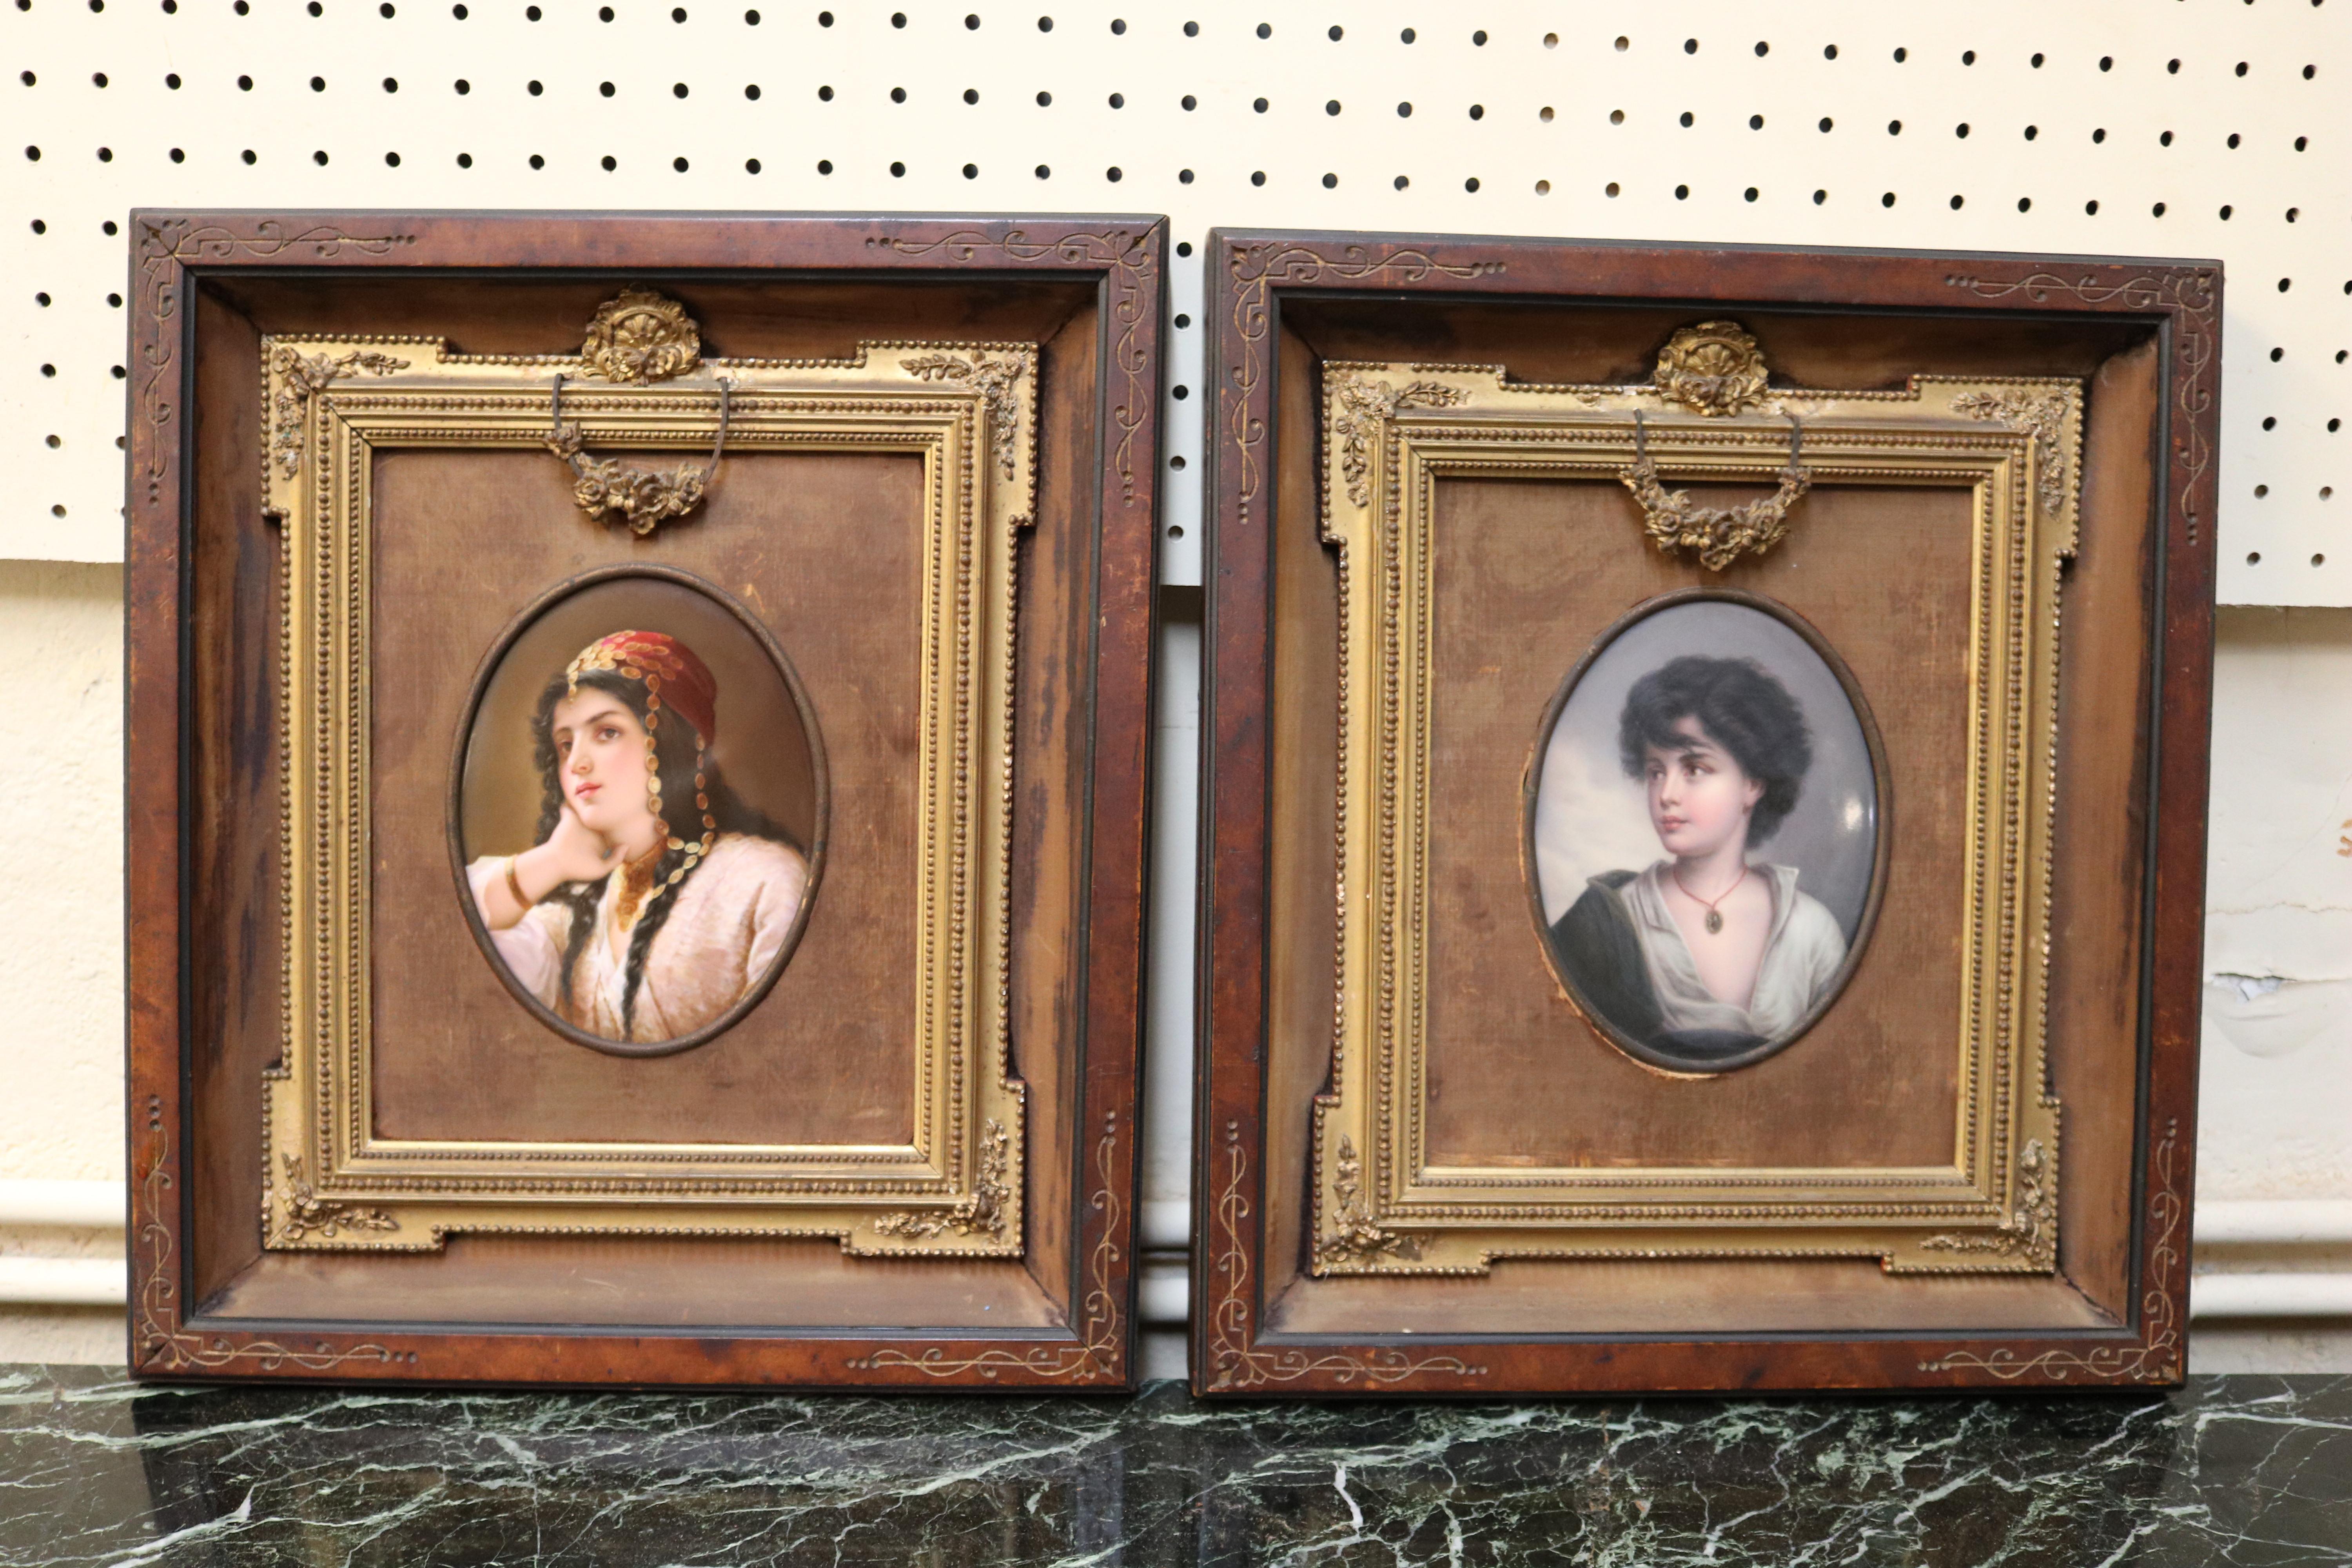 Paire de plaques en porcelaine peintes du 19ème siècle attribuées à KPM représentant une femme et un garçon

Dimensions : Cadre - 16